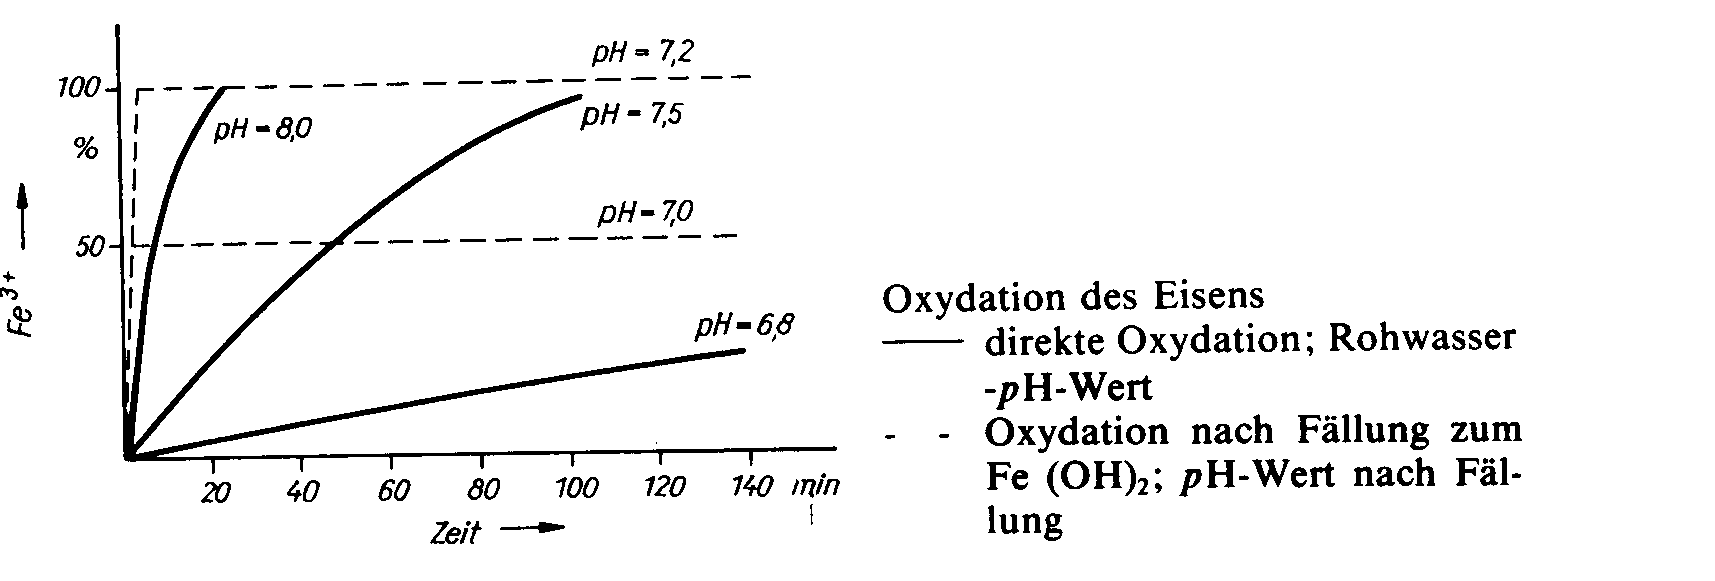 oxidation des Eisens